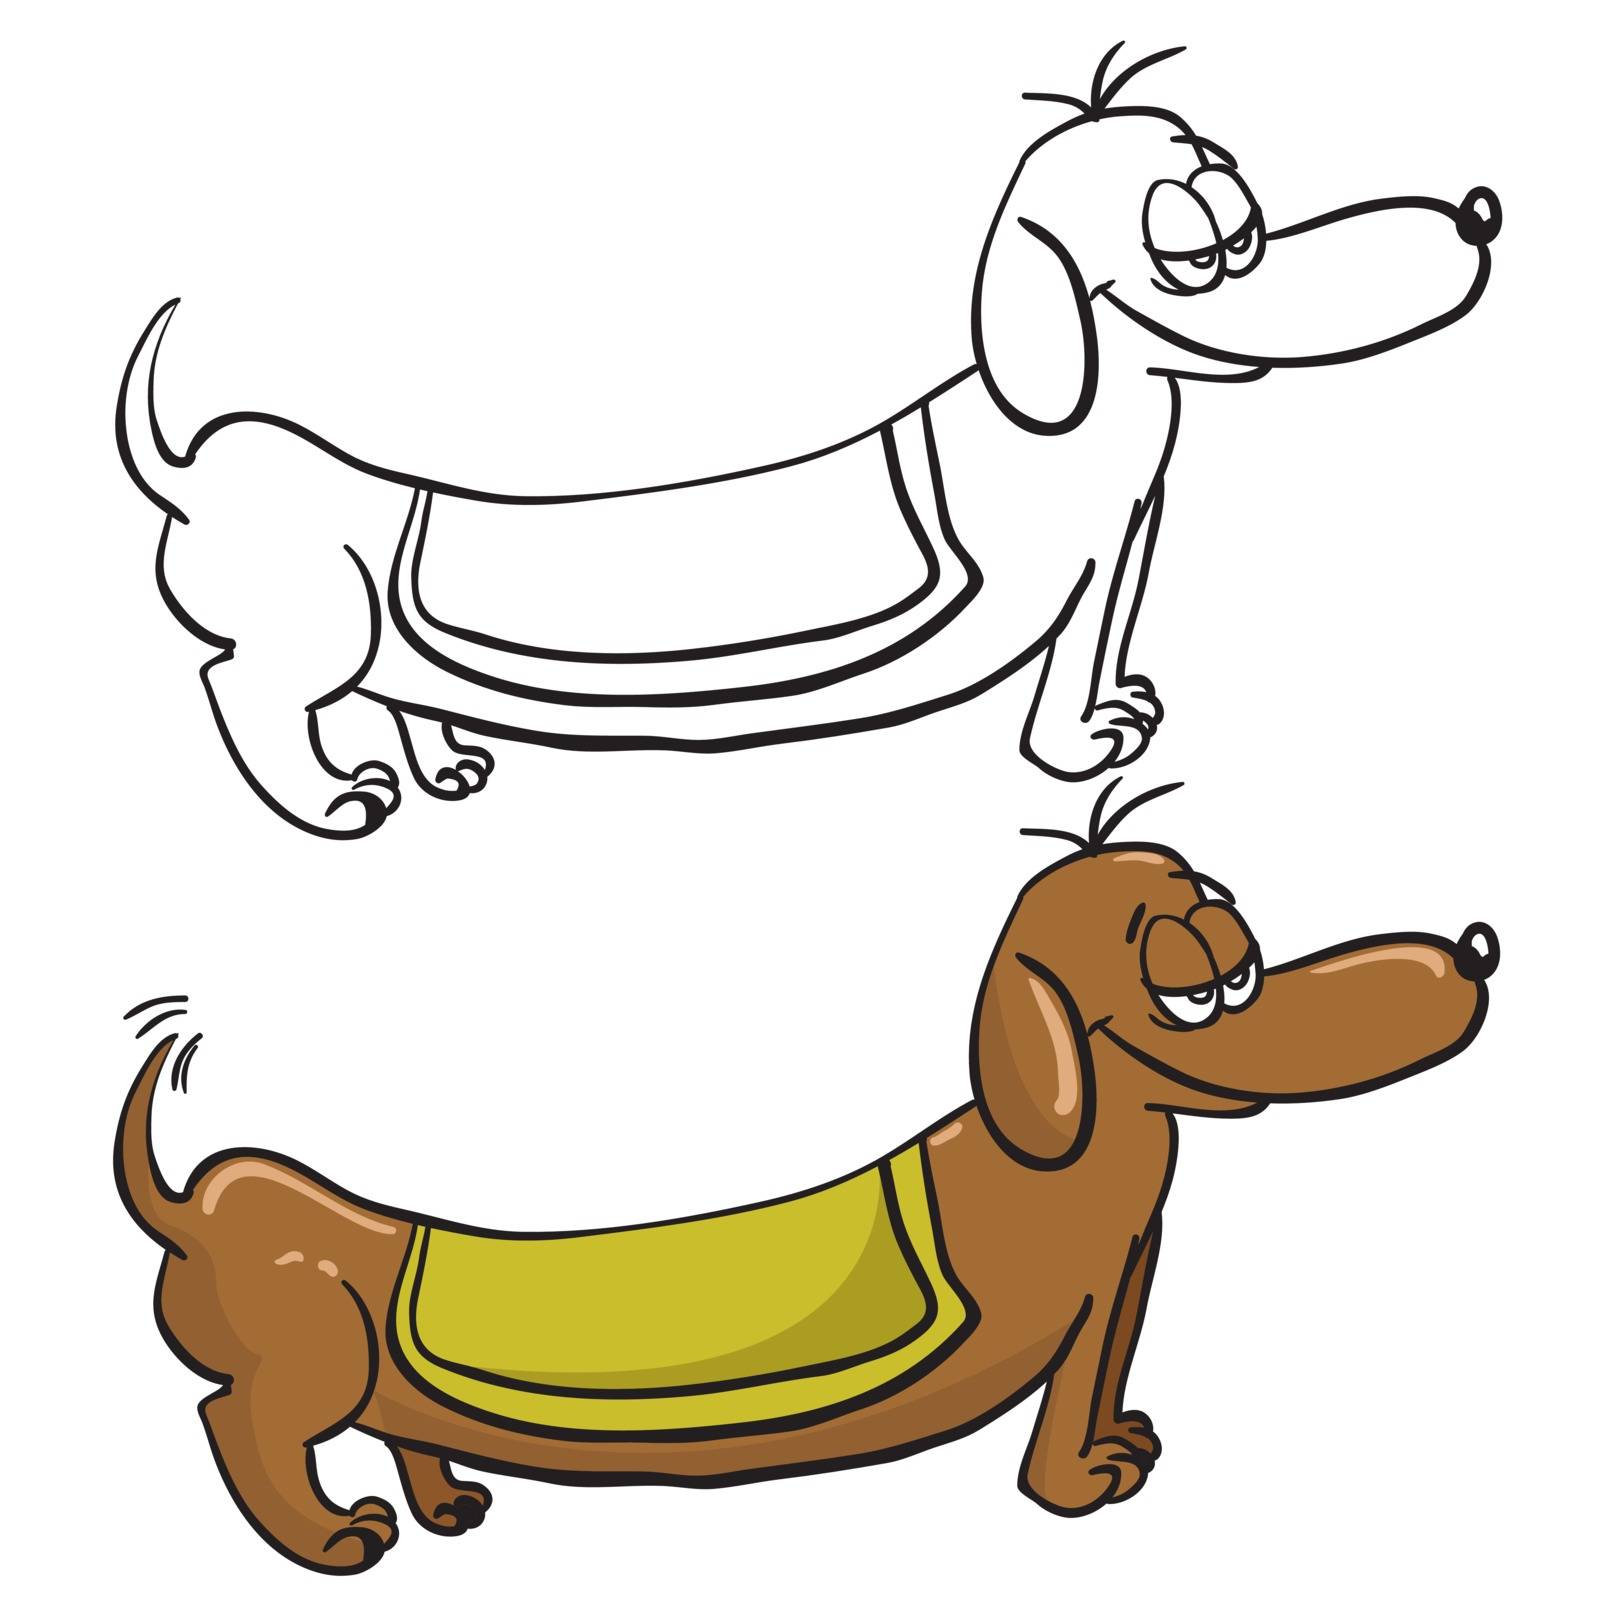 evil dachshund cartoon doodle